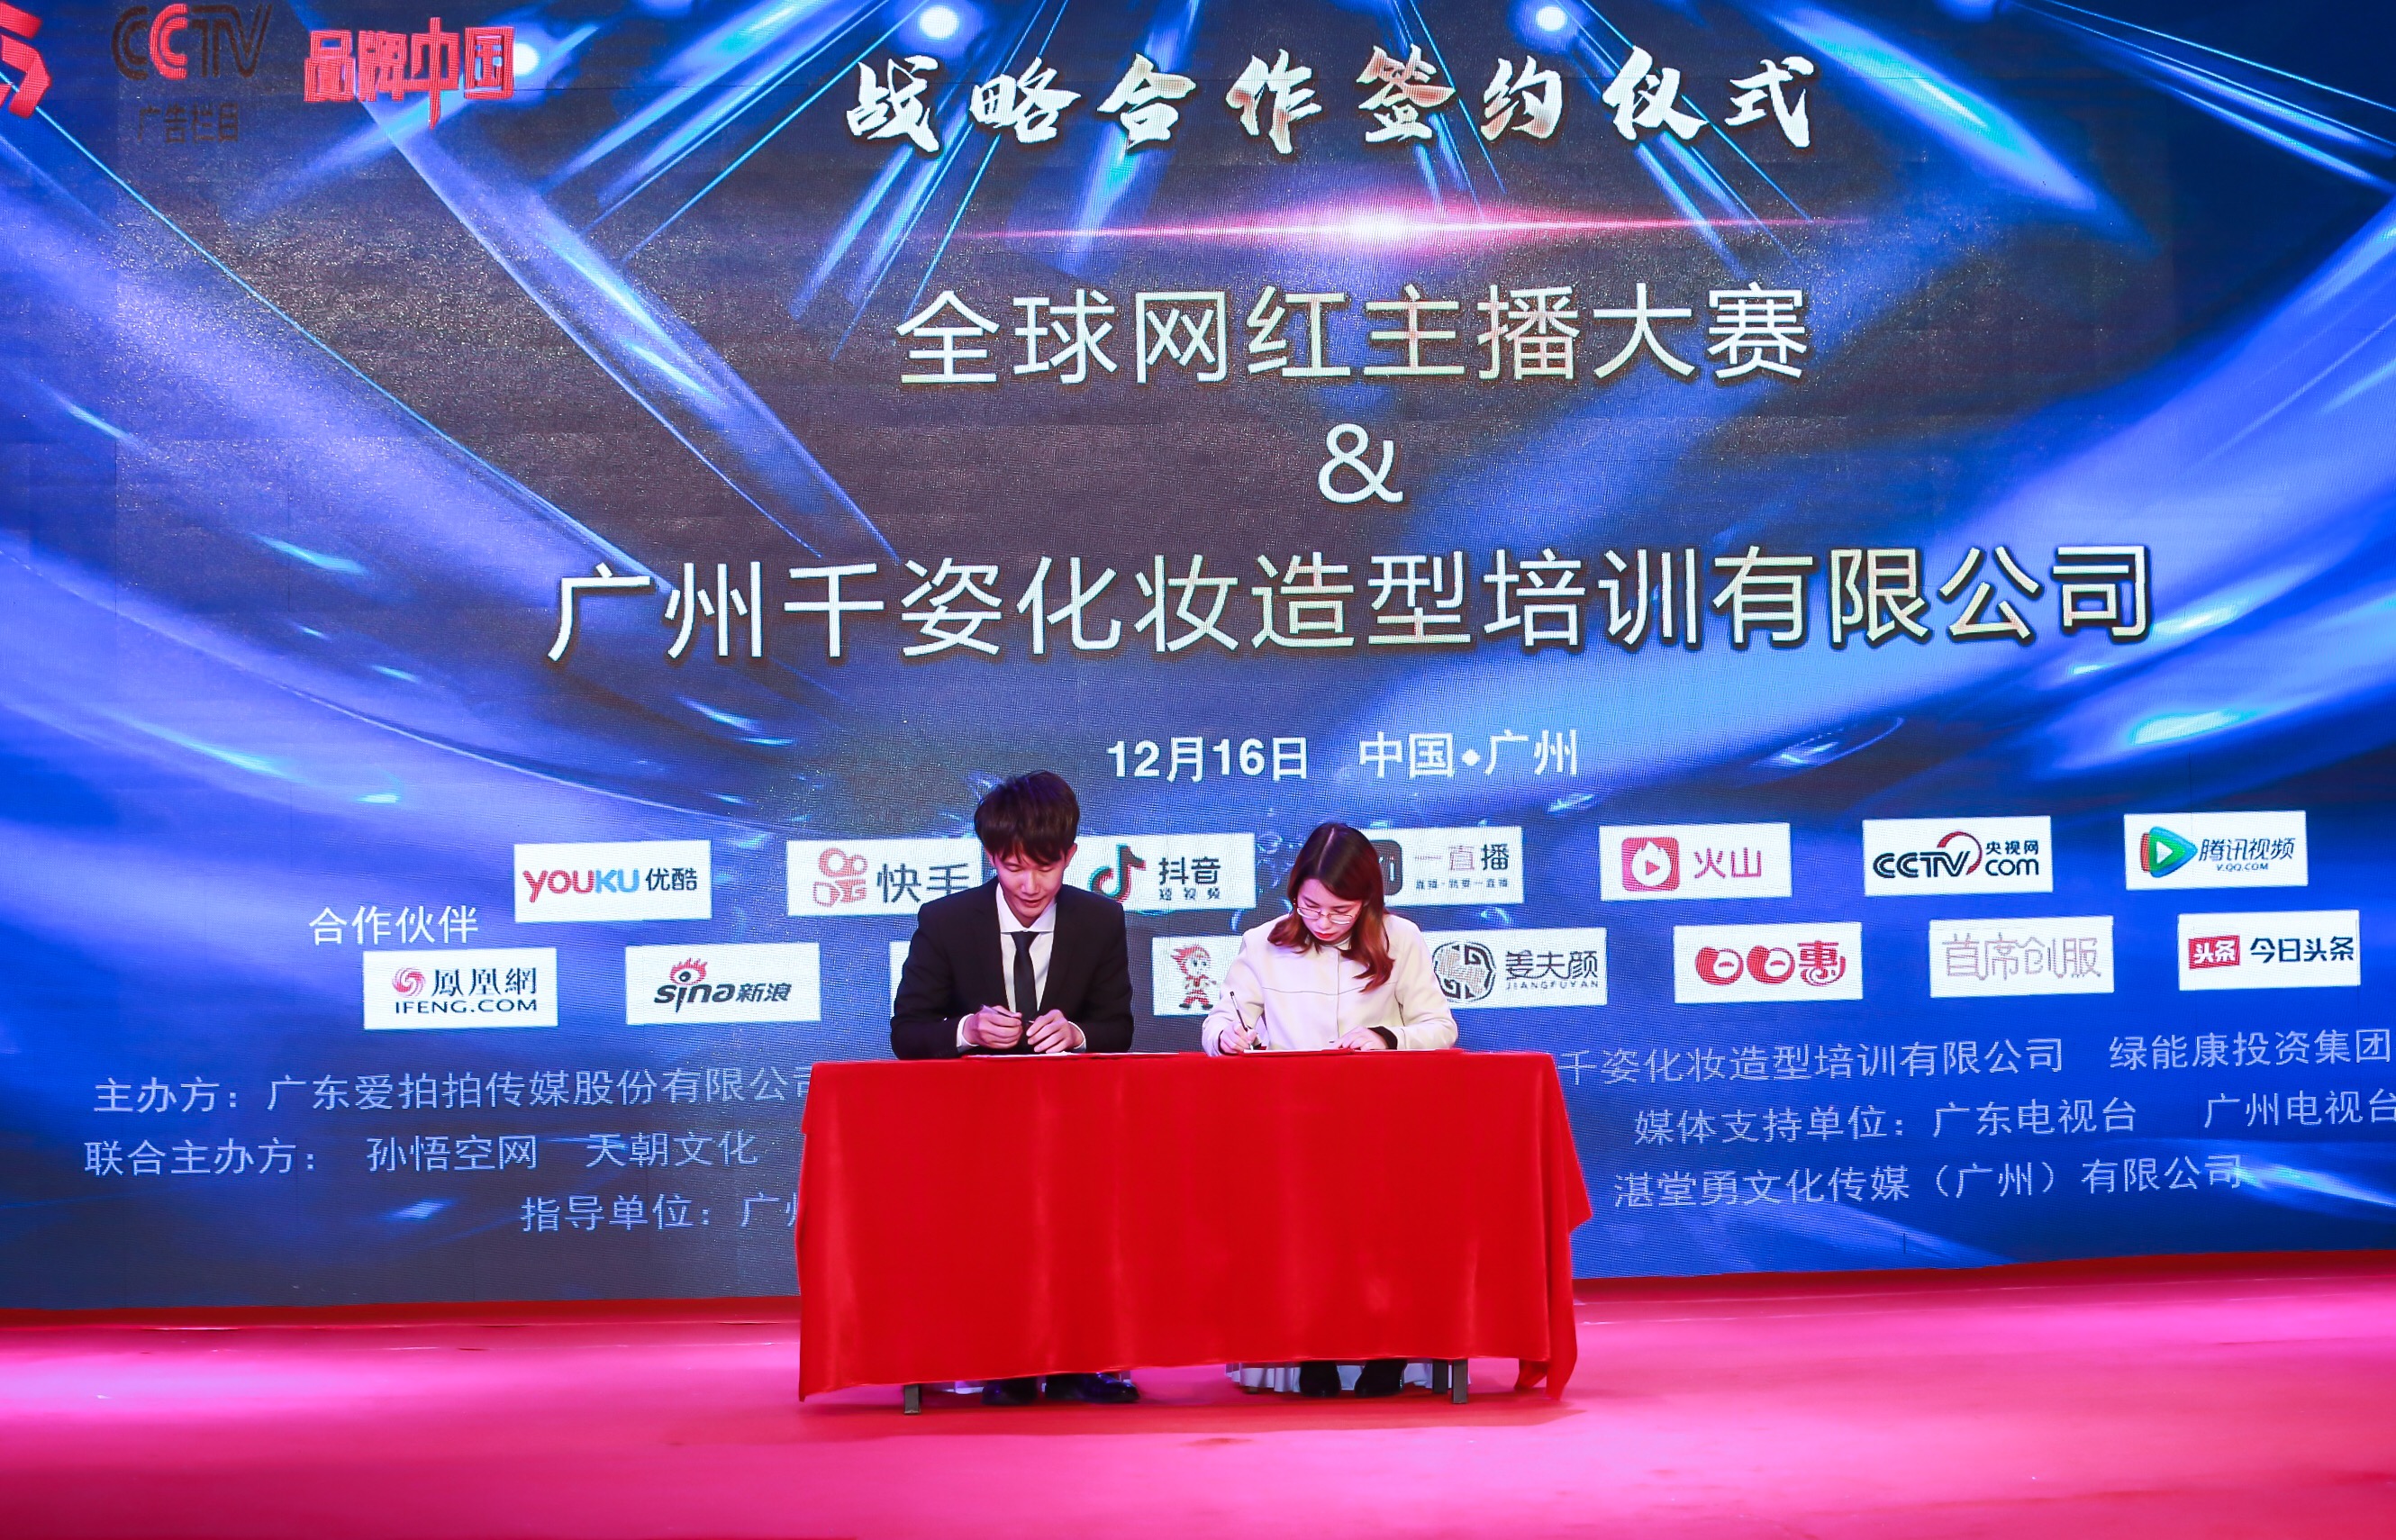 全球网红主播大赛新闻发布会在广州世贸服装城圆满举办!